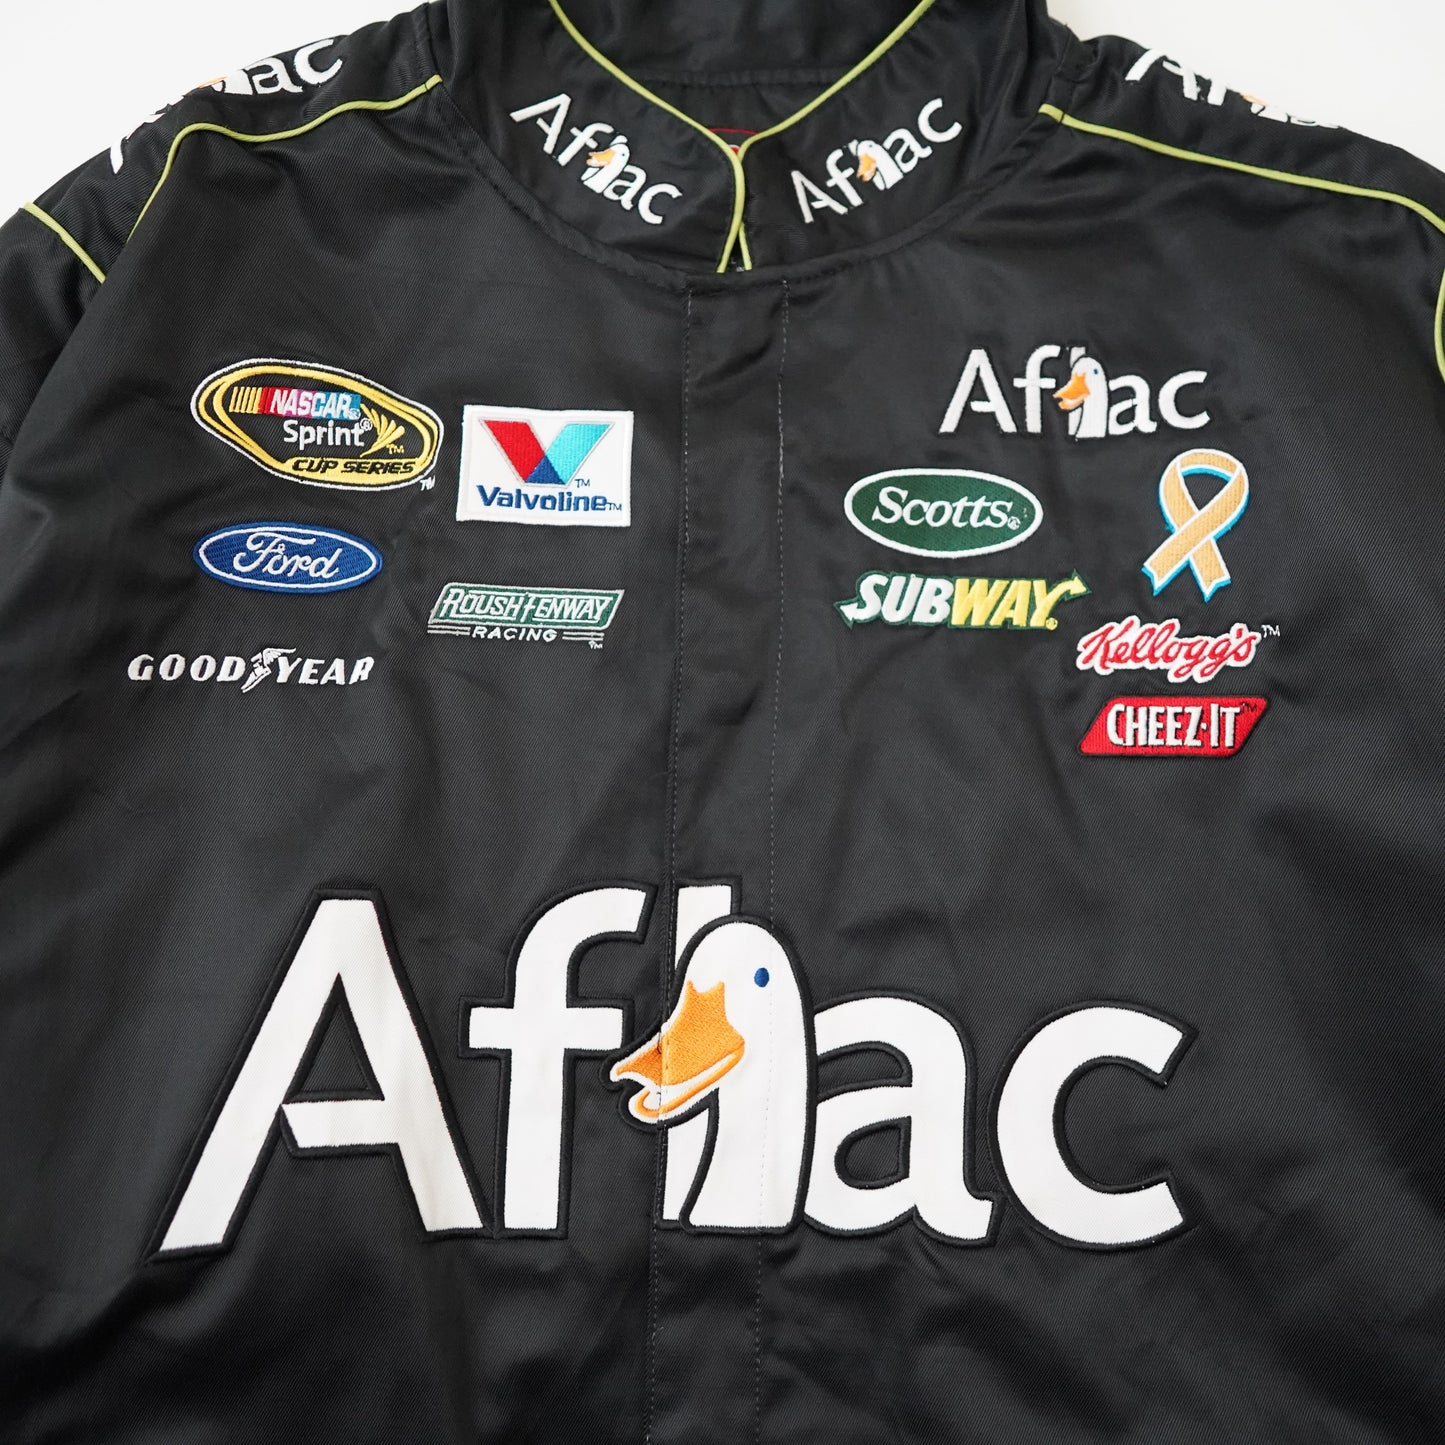 CHASE AUTHENTICS NASCAR racing jacket